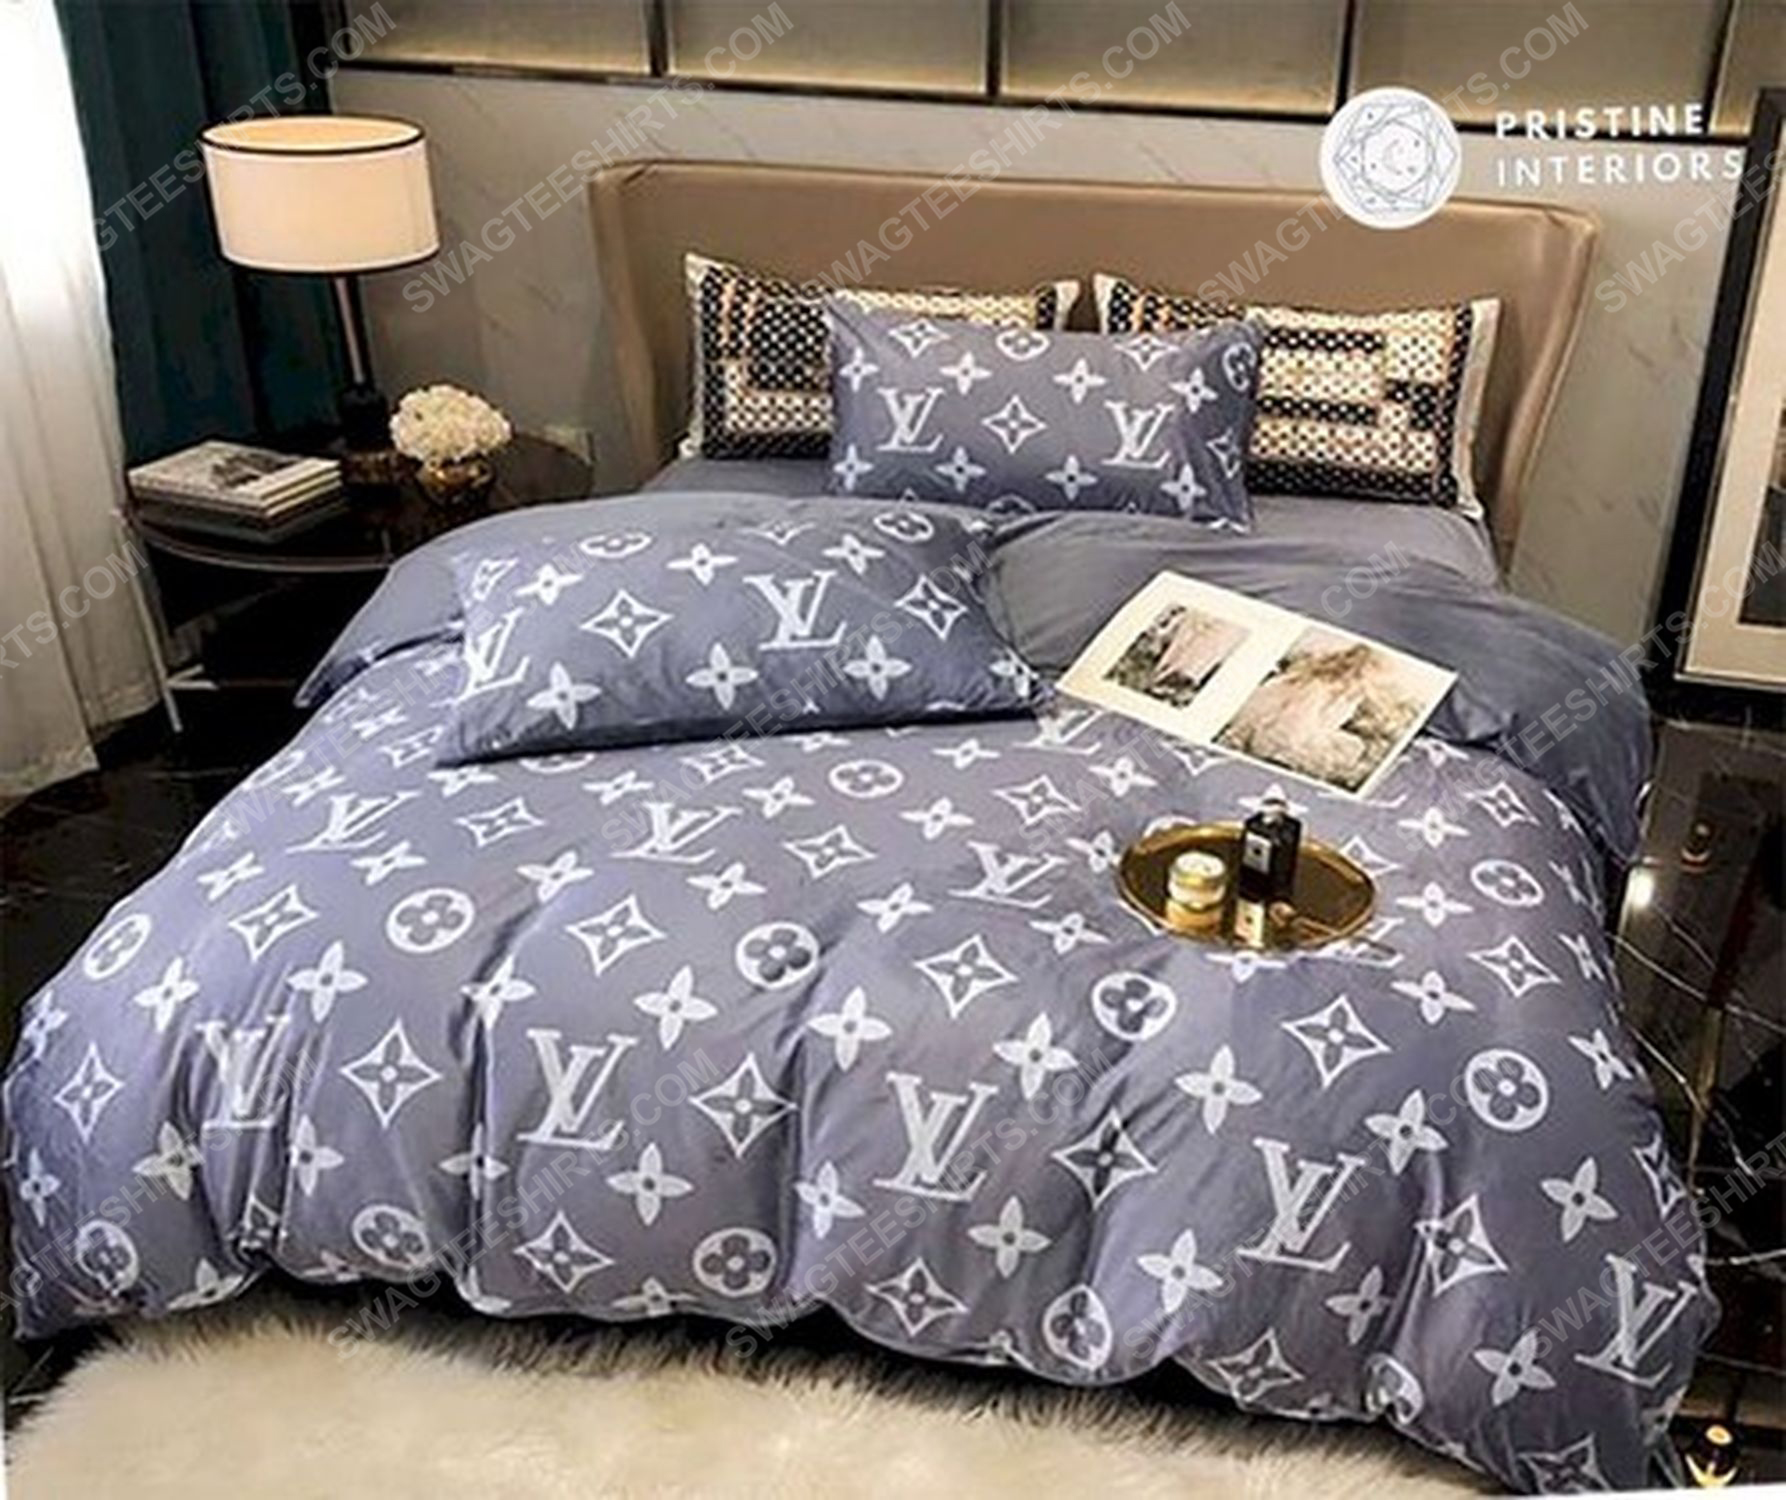 Lv monogram full print duvet cover bedding set 2 - Copy